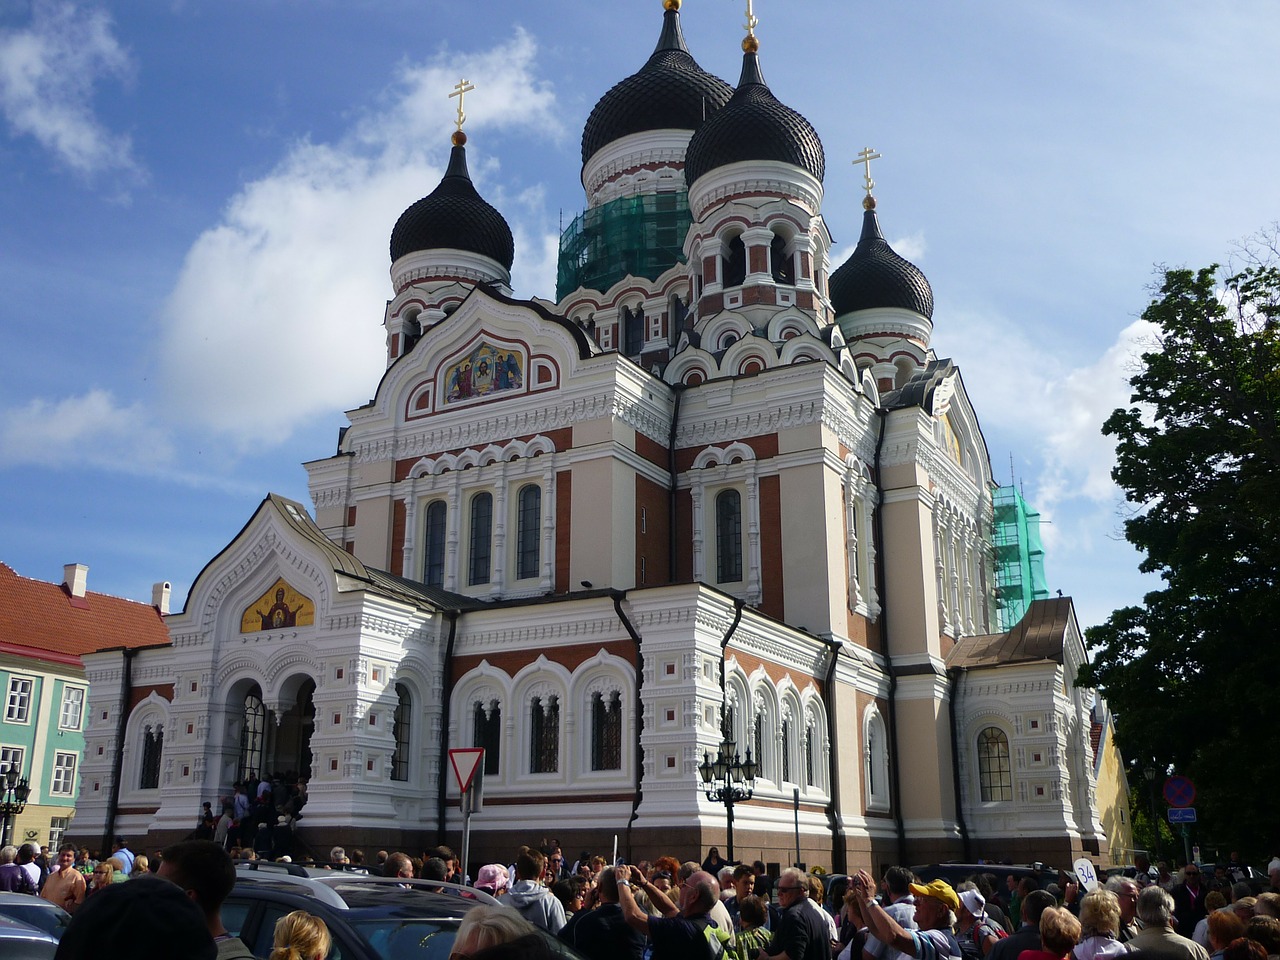 アレクサンドル ネフスキー聖堂 タリン歴史地区 世界遺産オンラインガイド